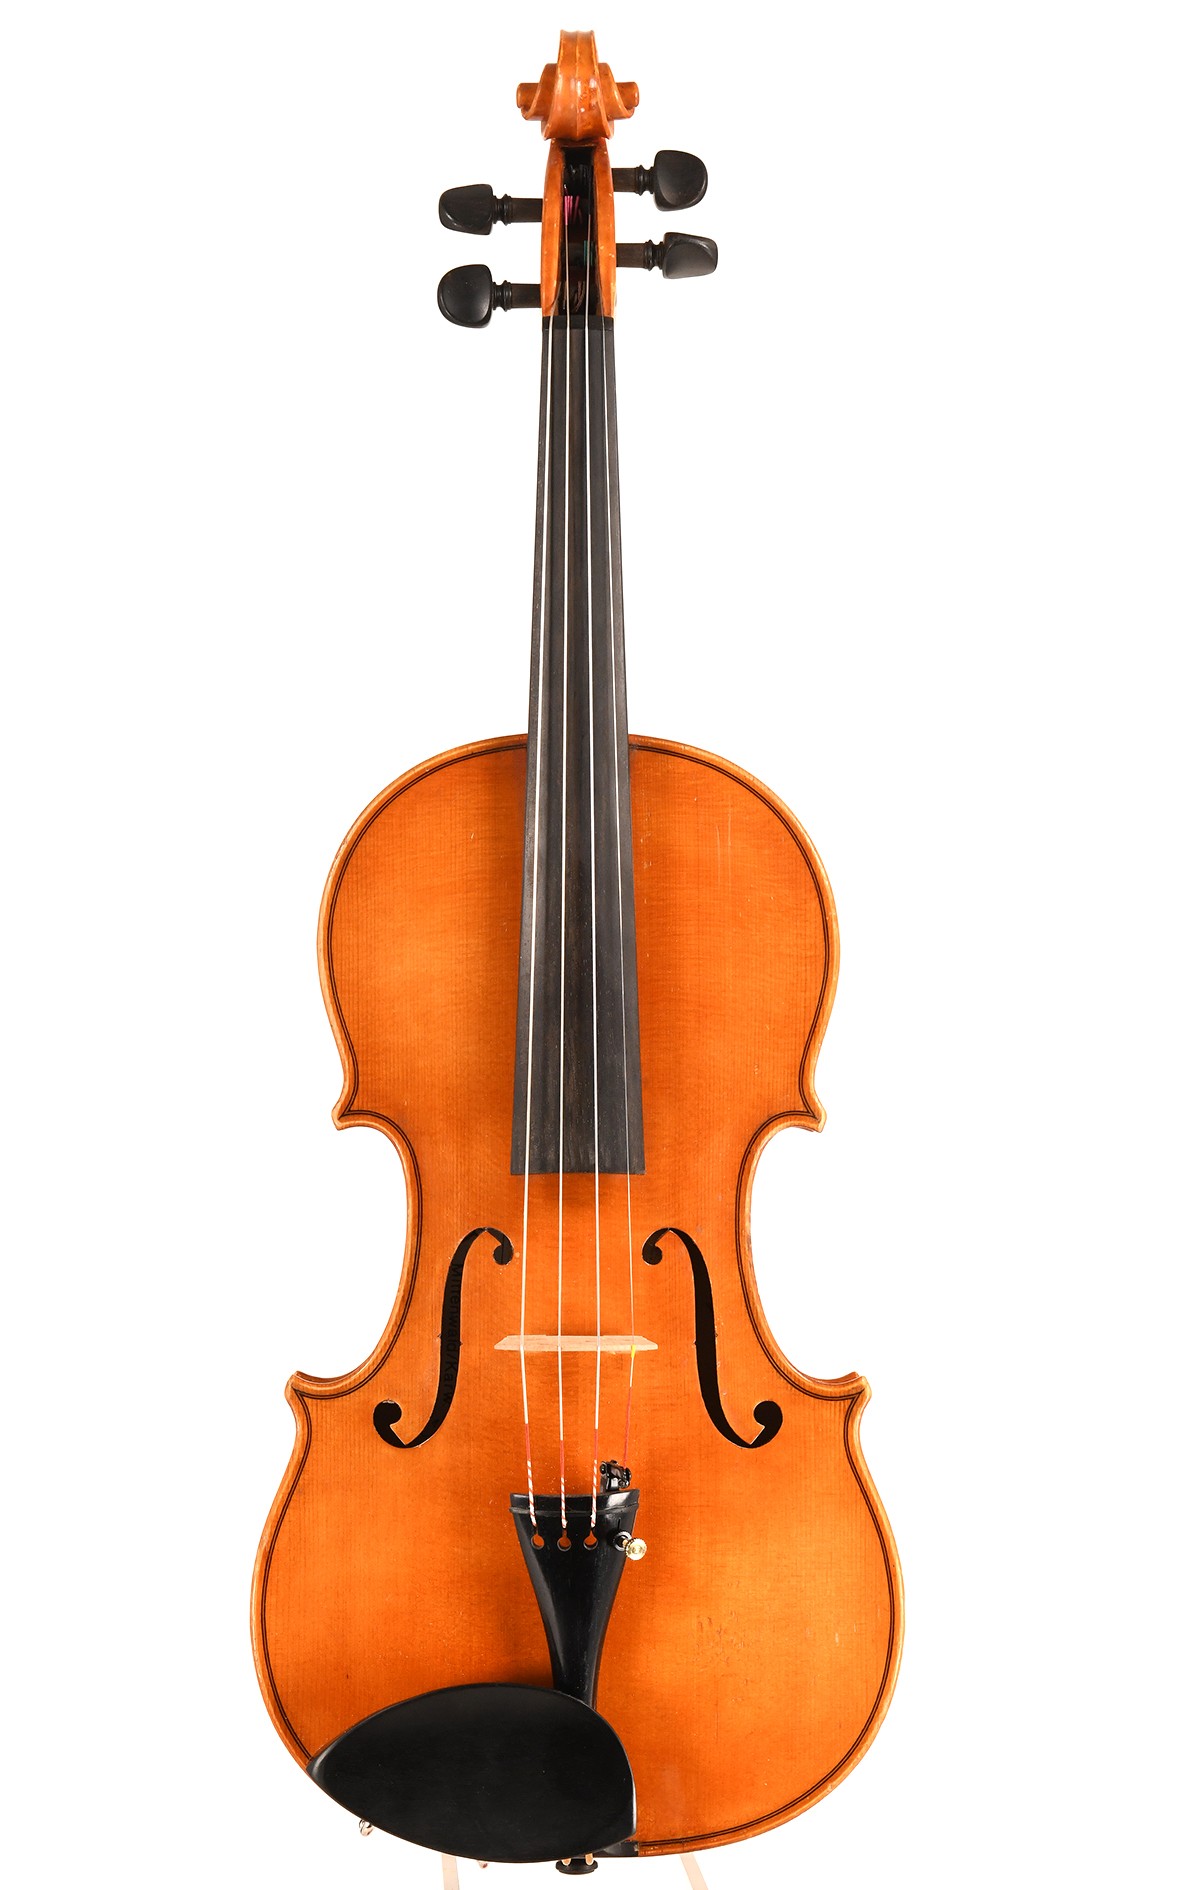 H. Karner Mittenwald, violon de maître de l'année 1970